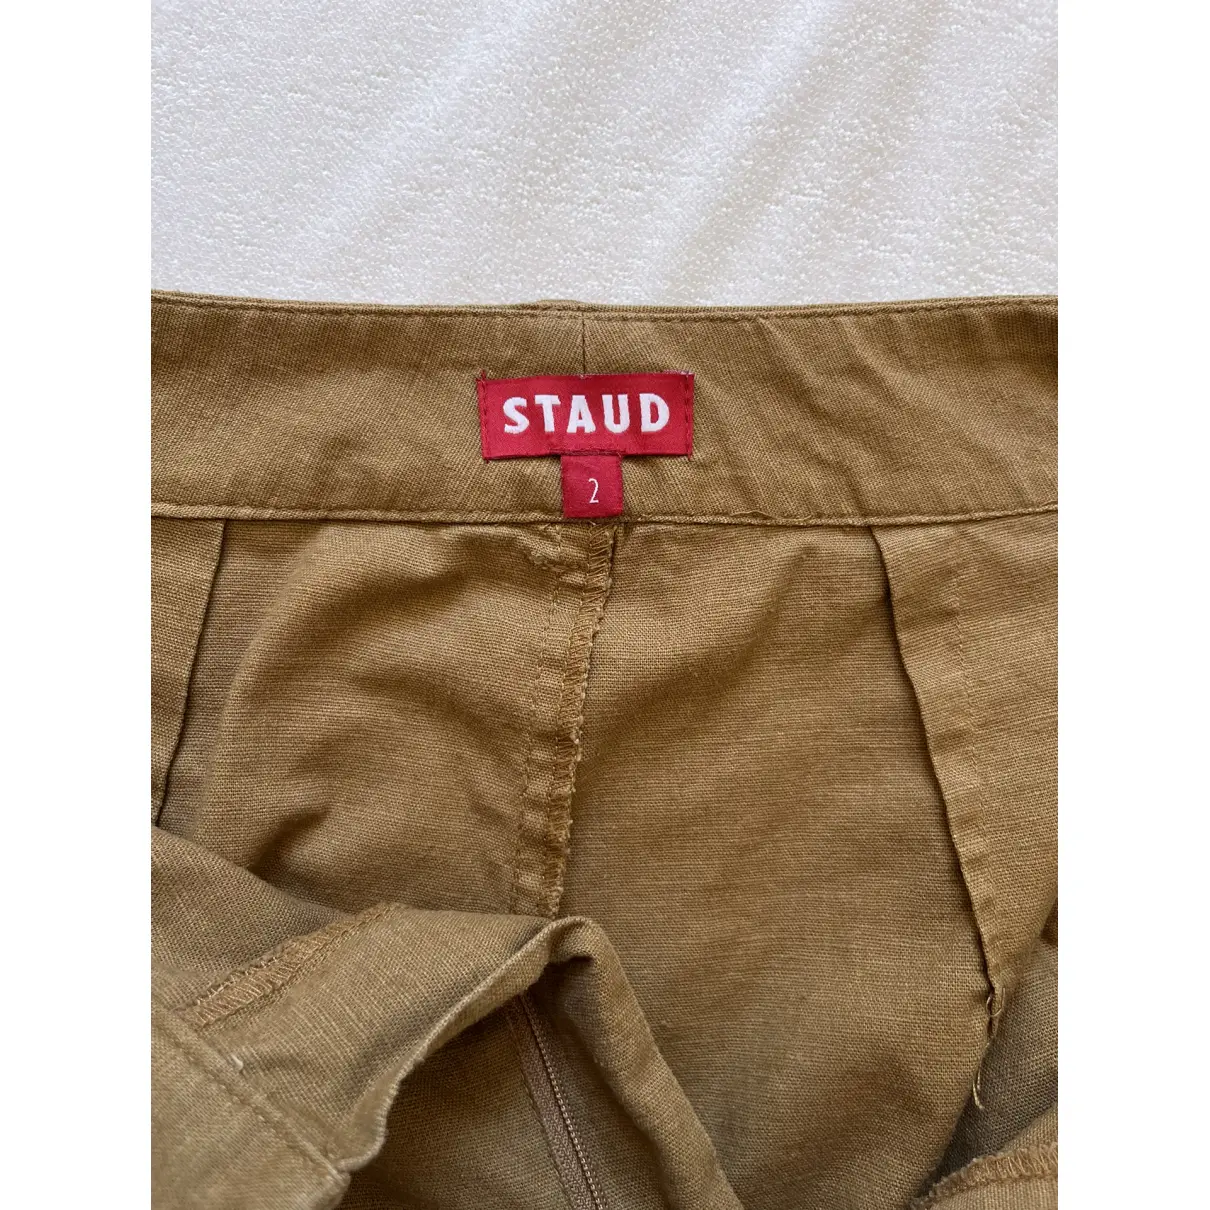 Buy Staud Linen large pants online